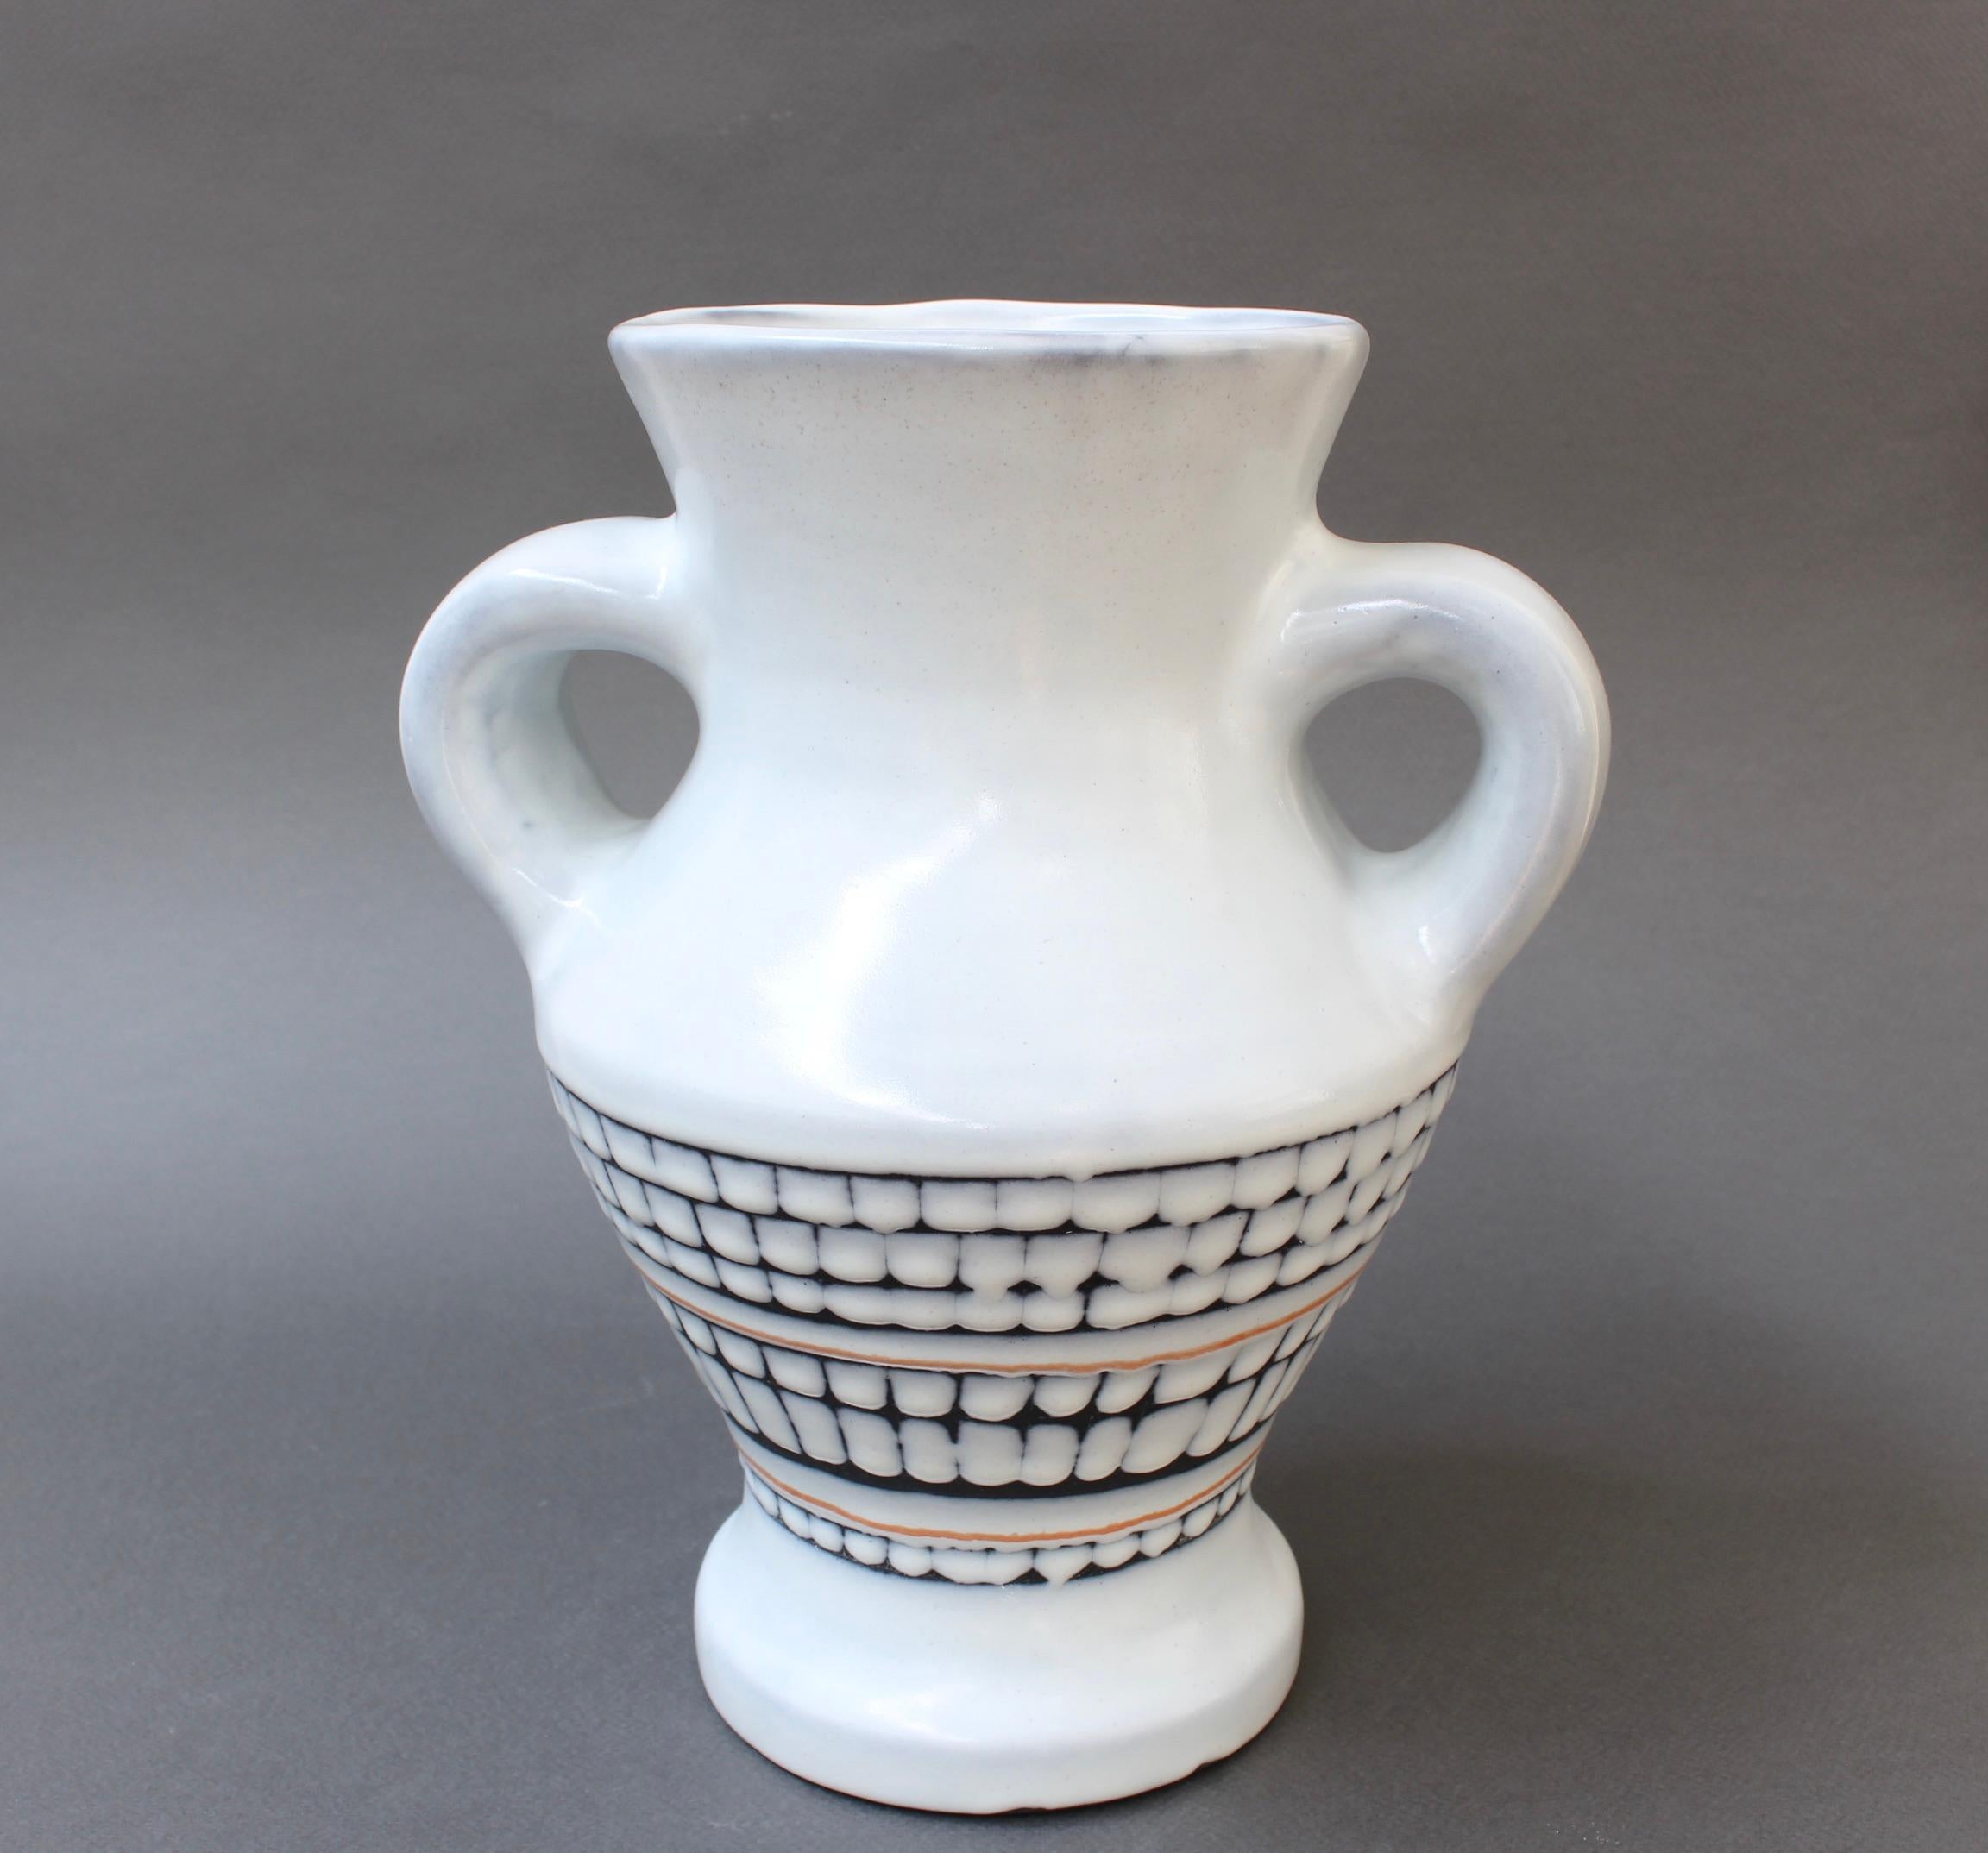 Vintage-Keramikvase mit Henkeln im klassischen Stil des Keramikmeisters Roger Capron (um 1950). In sehr gutem Gesamtzustand ist der kreideweiße Hintergrund von der Mitte abwärts mit einem Kachelmuster verziert. Ein Stück dieser Größe und dieses